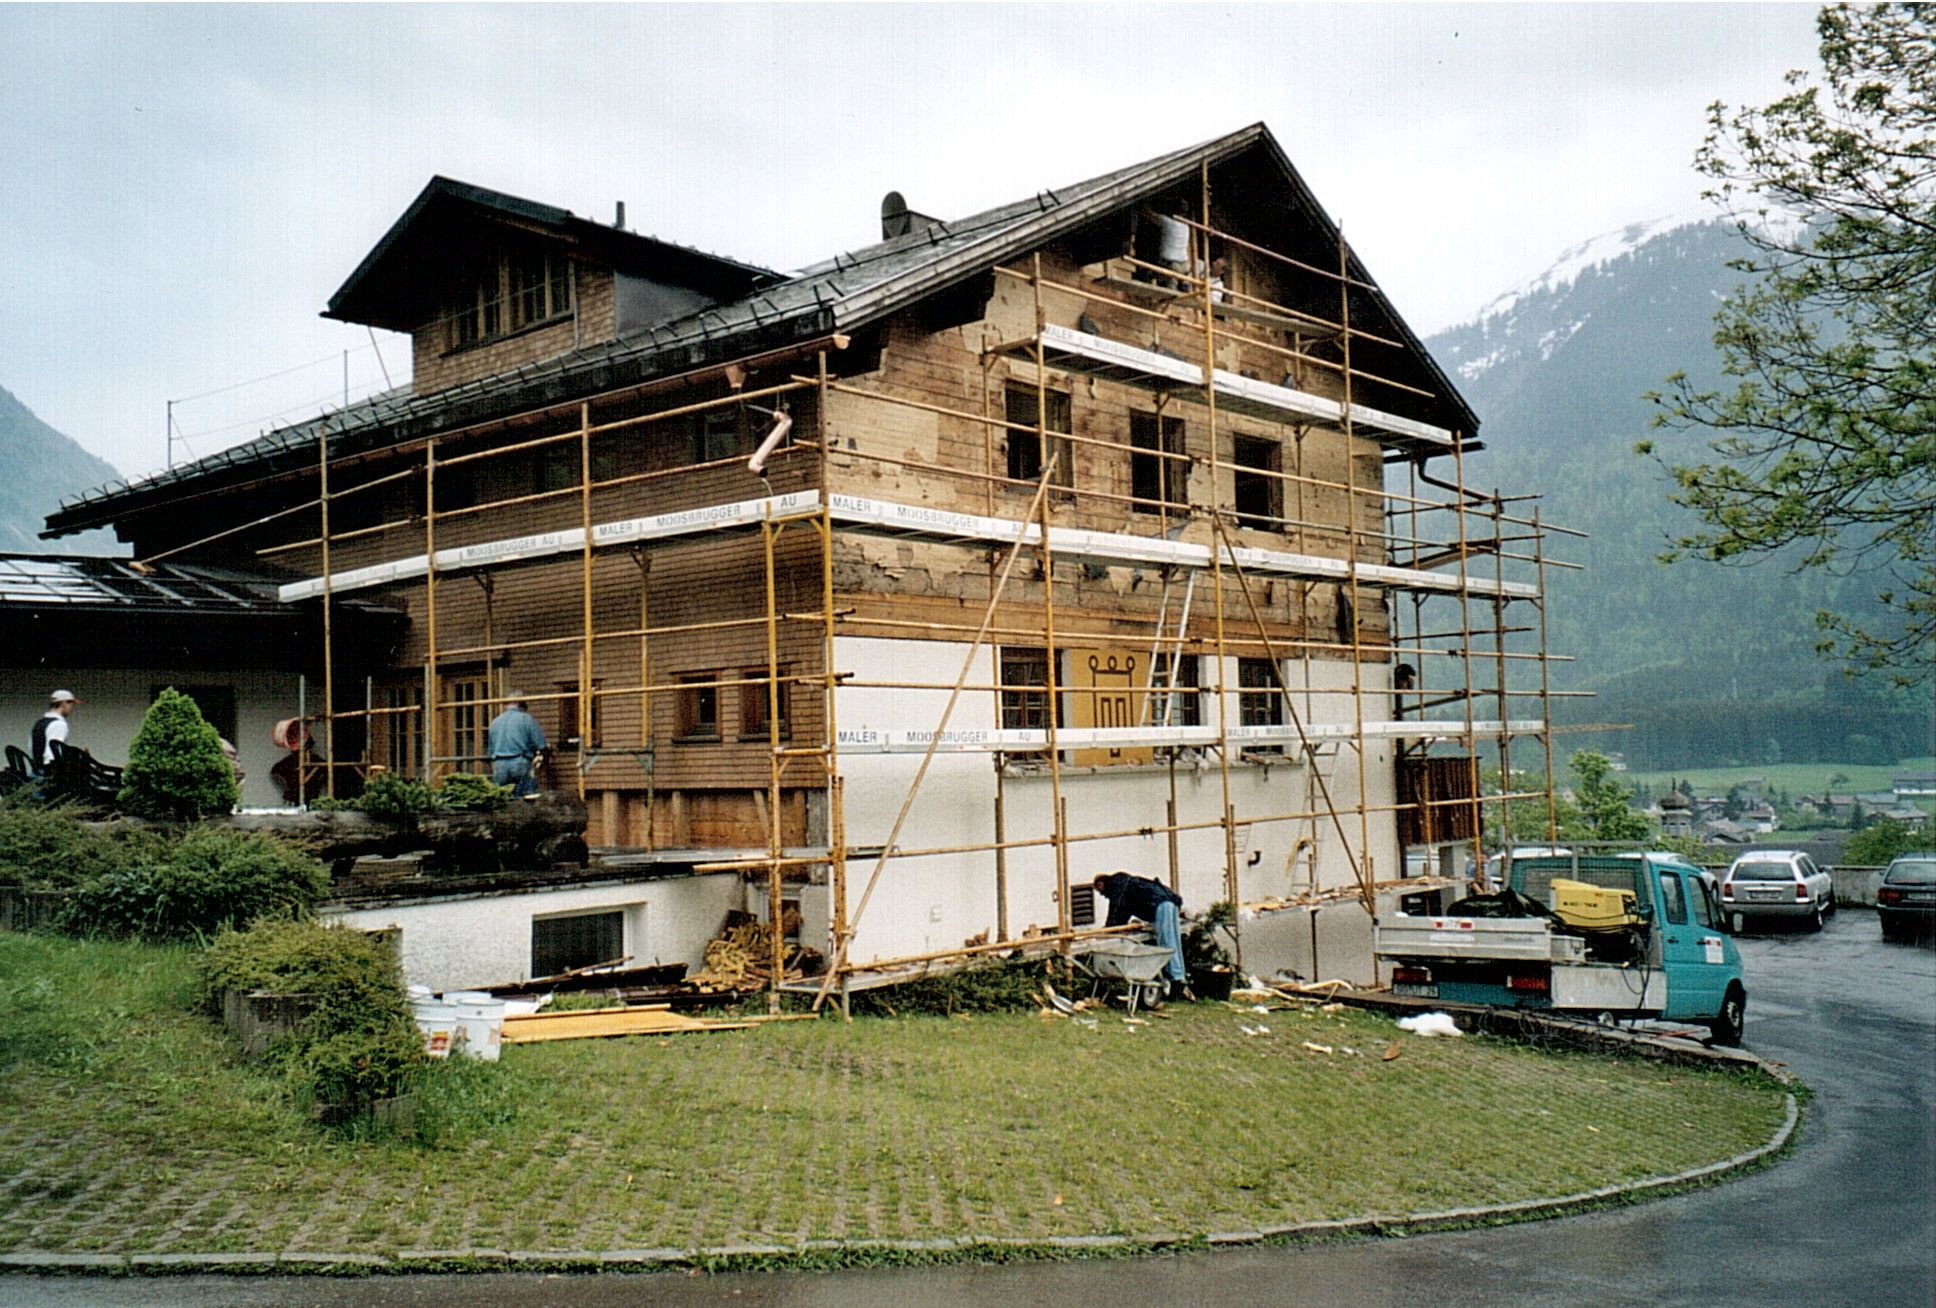 Foto Haus Don Bosco in Au-Rehmen eingerüstet